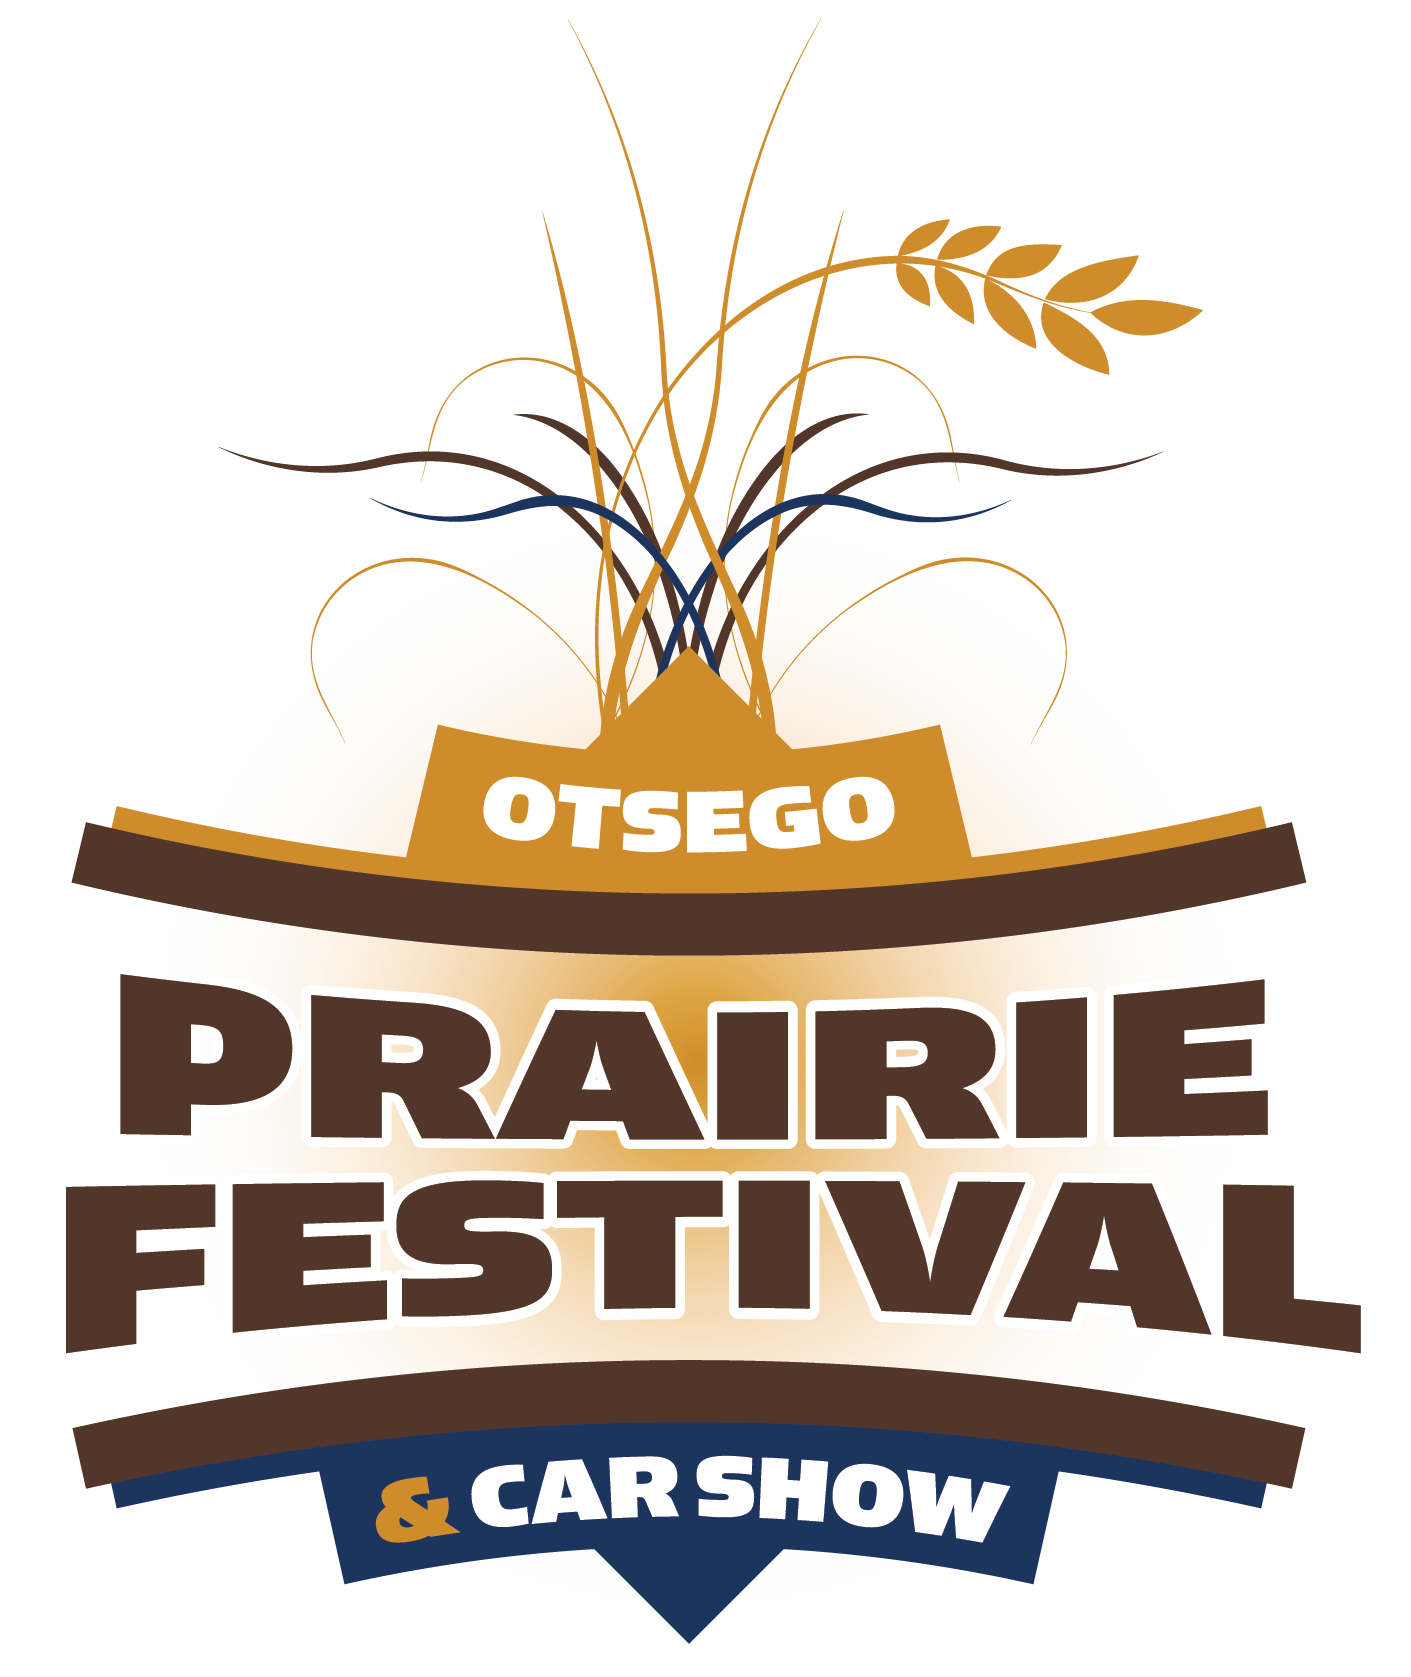 Car Show The Otsego Prairie Festival